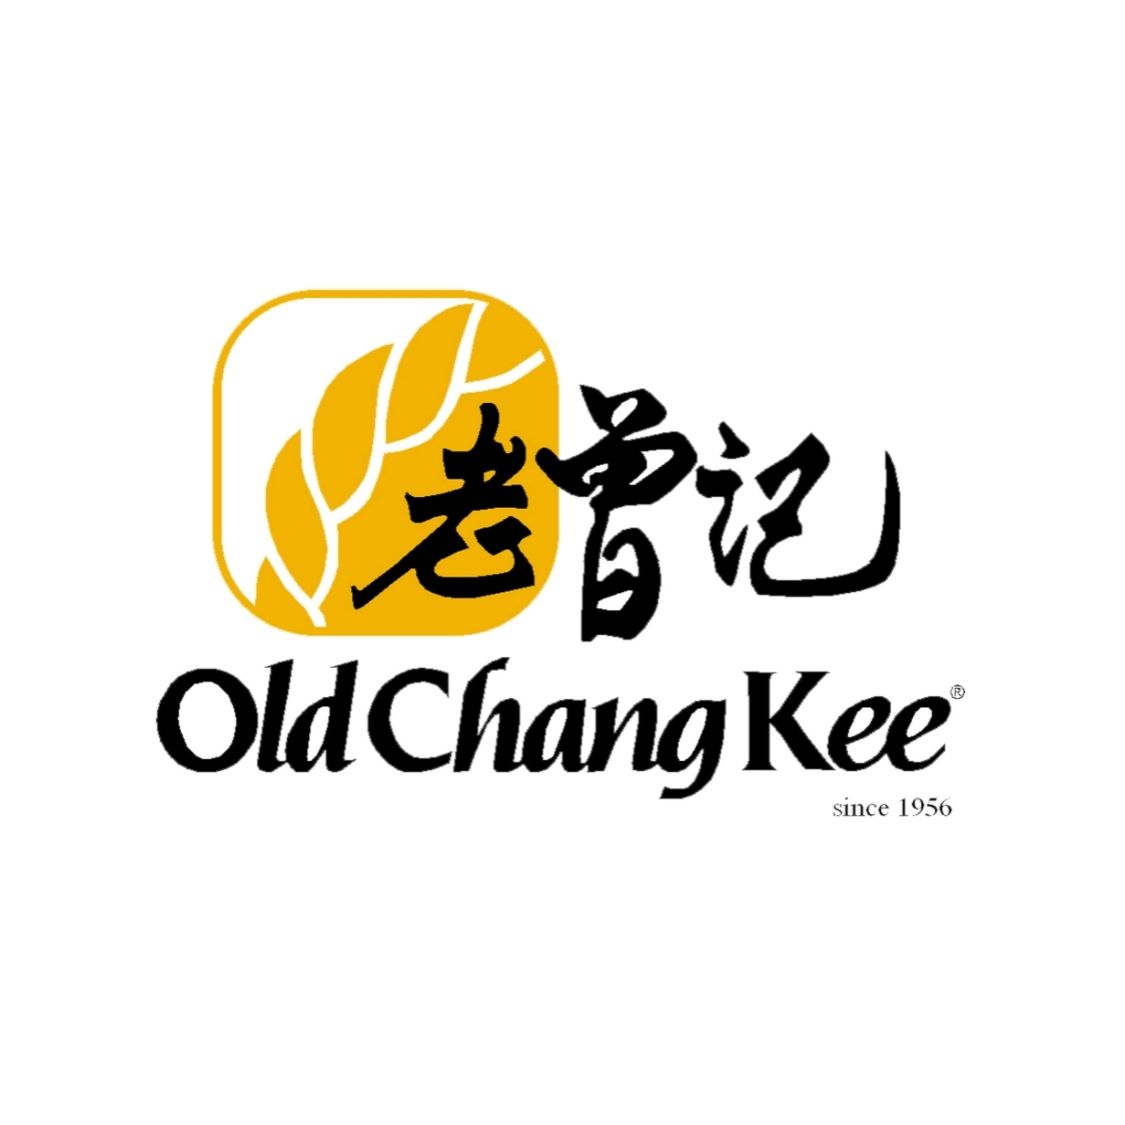 Old Chang Kee Logo.jpg